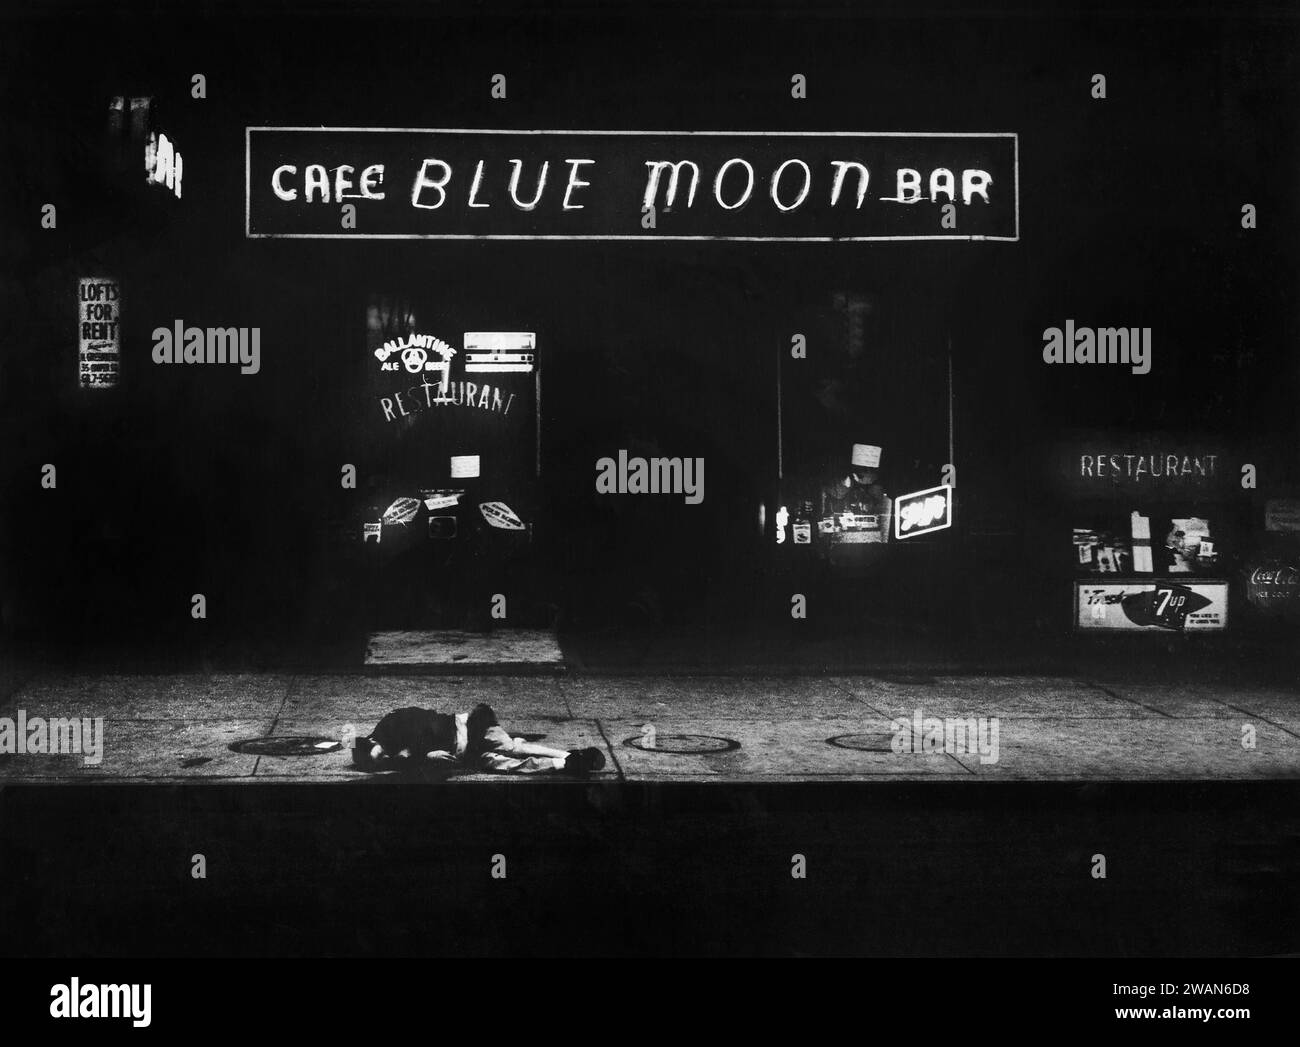 Homme couché sur le trottoir devant le bar avec un panneau au-dessus indiquant «Cafe Blue Moon Bar», New York City, New York, USA, Angelo Rizzuto, collection Anthony Angel, décembre 1957 Banque D'Images